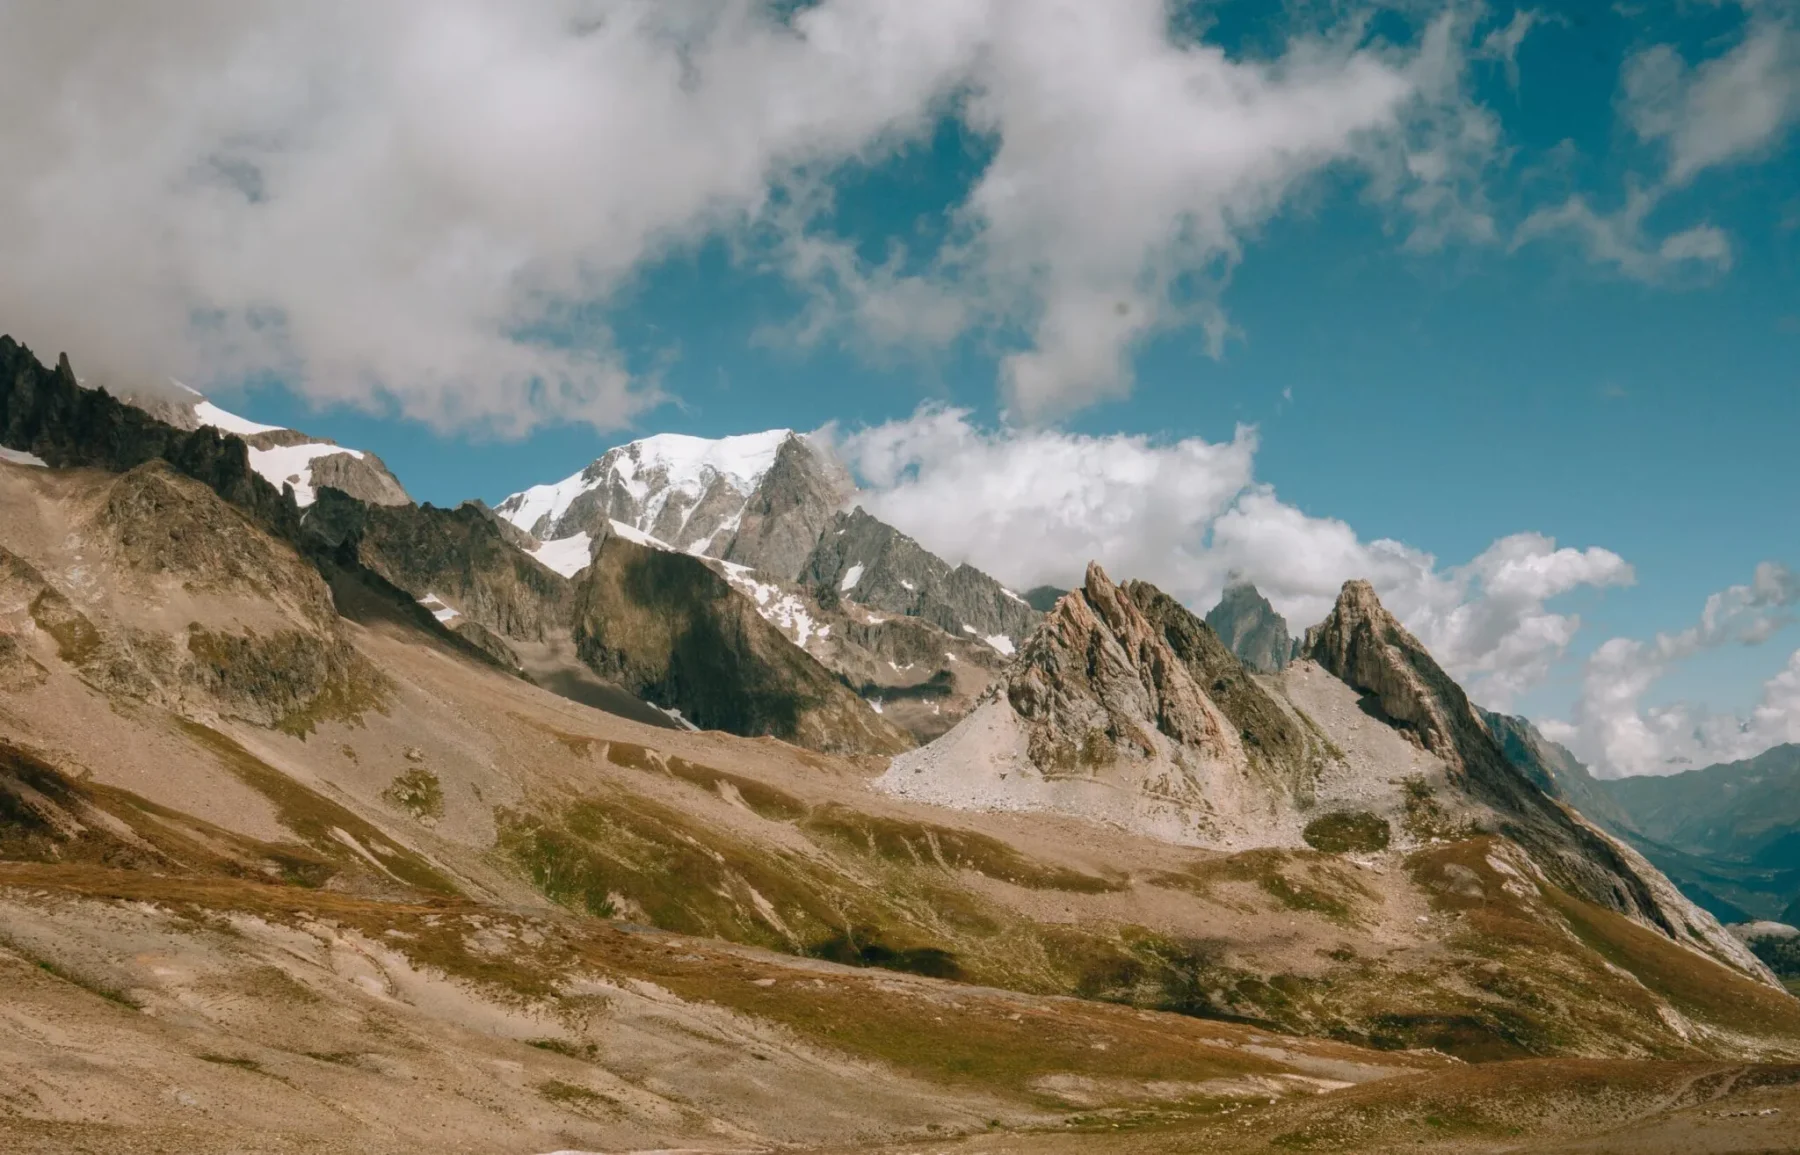 Deel van de Tour du Mont Blanc, één van de mooiste hikes in Europa.